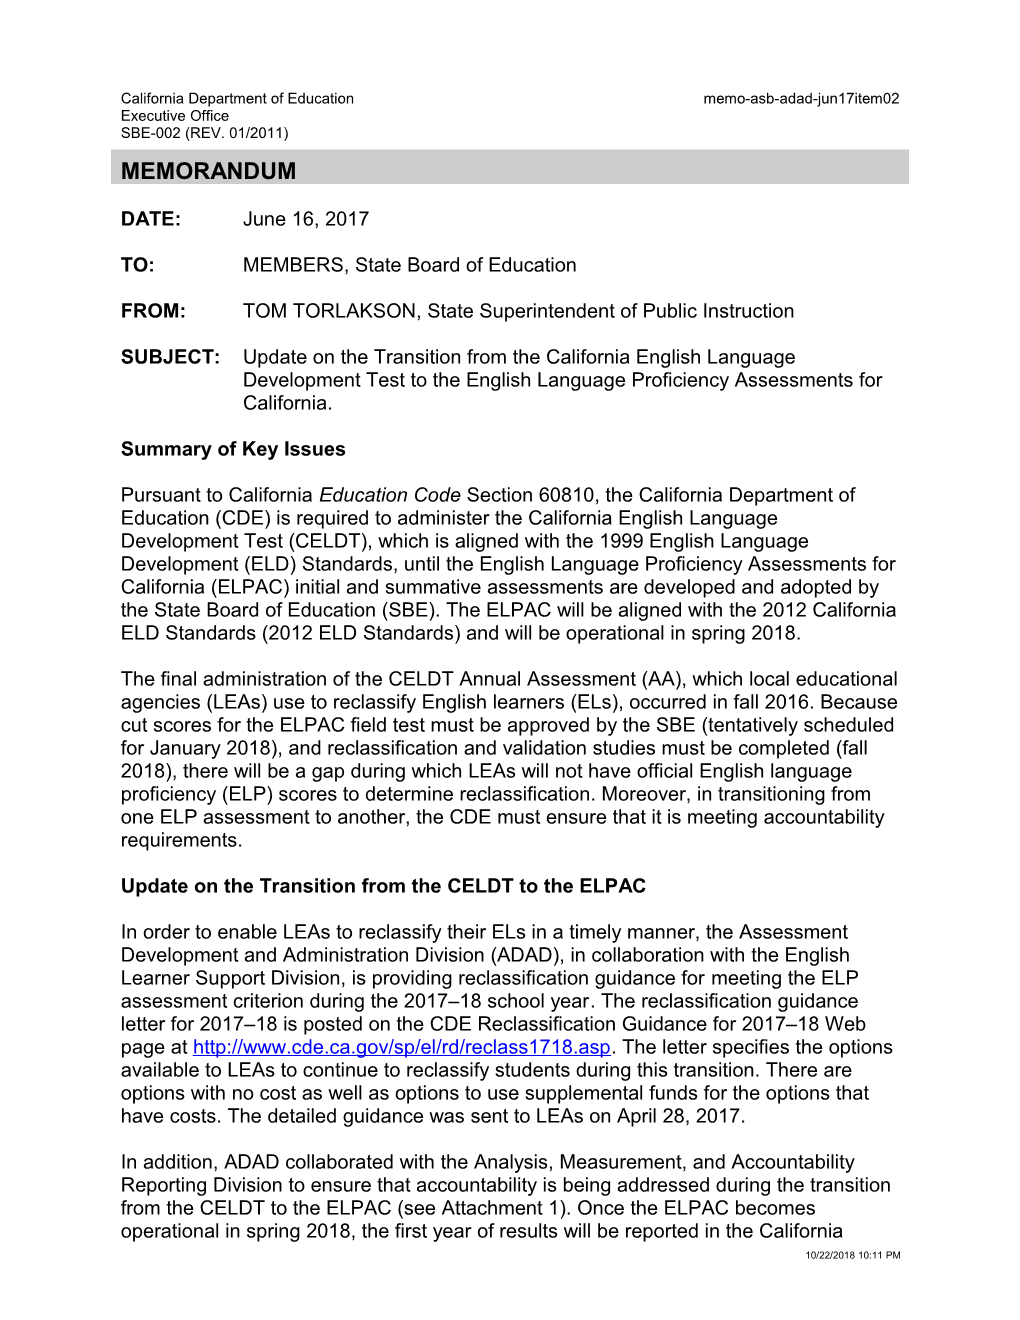 June 2017 Memo ADAD Item 02 - Information Memorandum (CA State Board of Education)